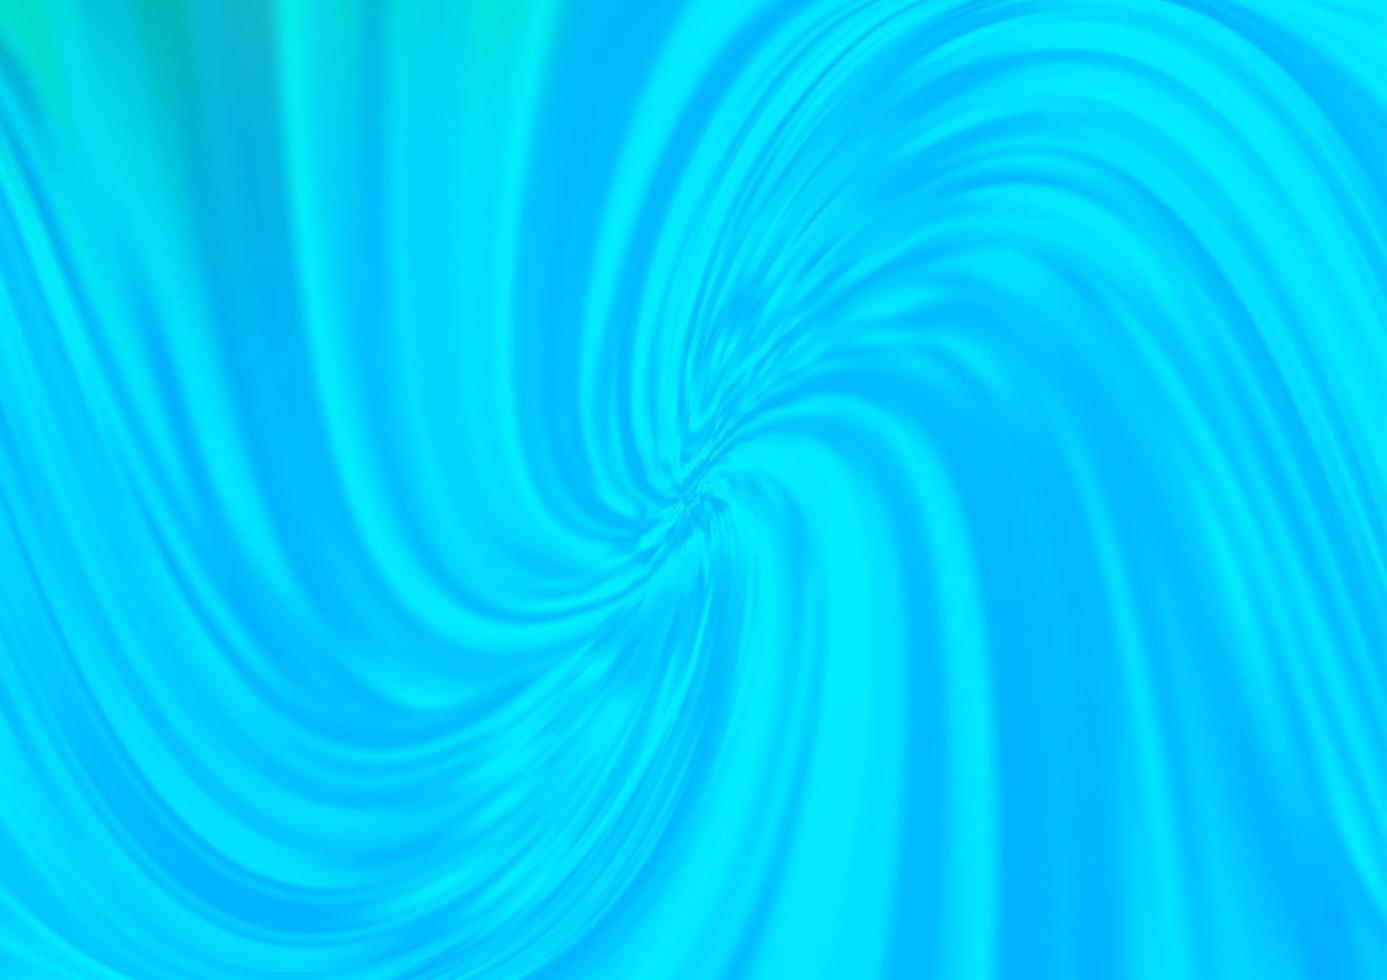 sfondo vettoriale azzurro con linee astratte.